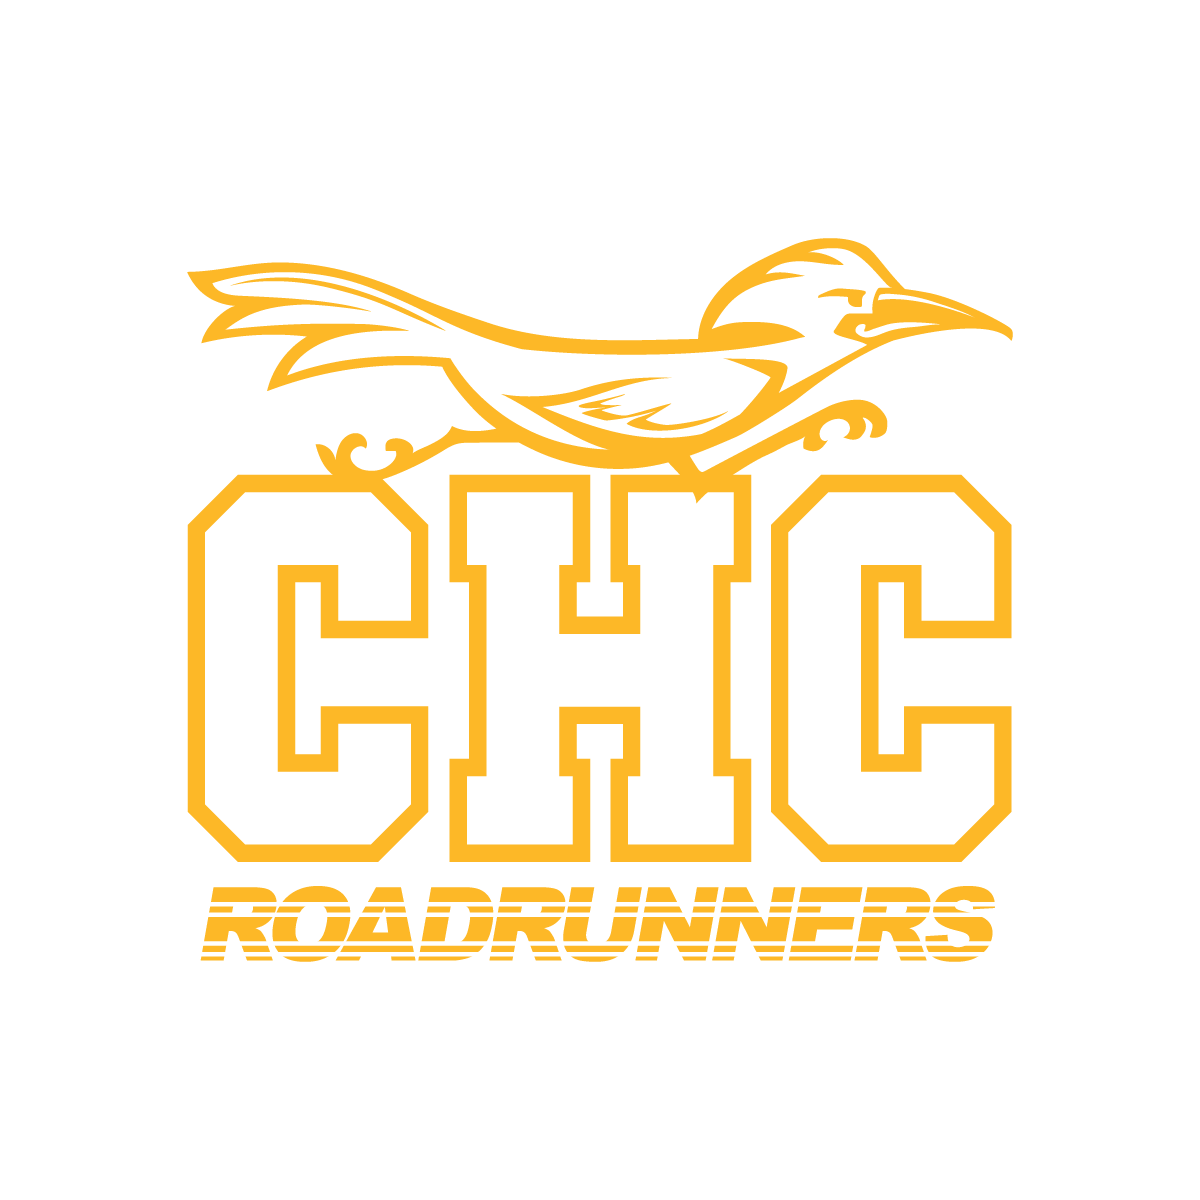 CHC Roadrunners - yellow